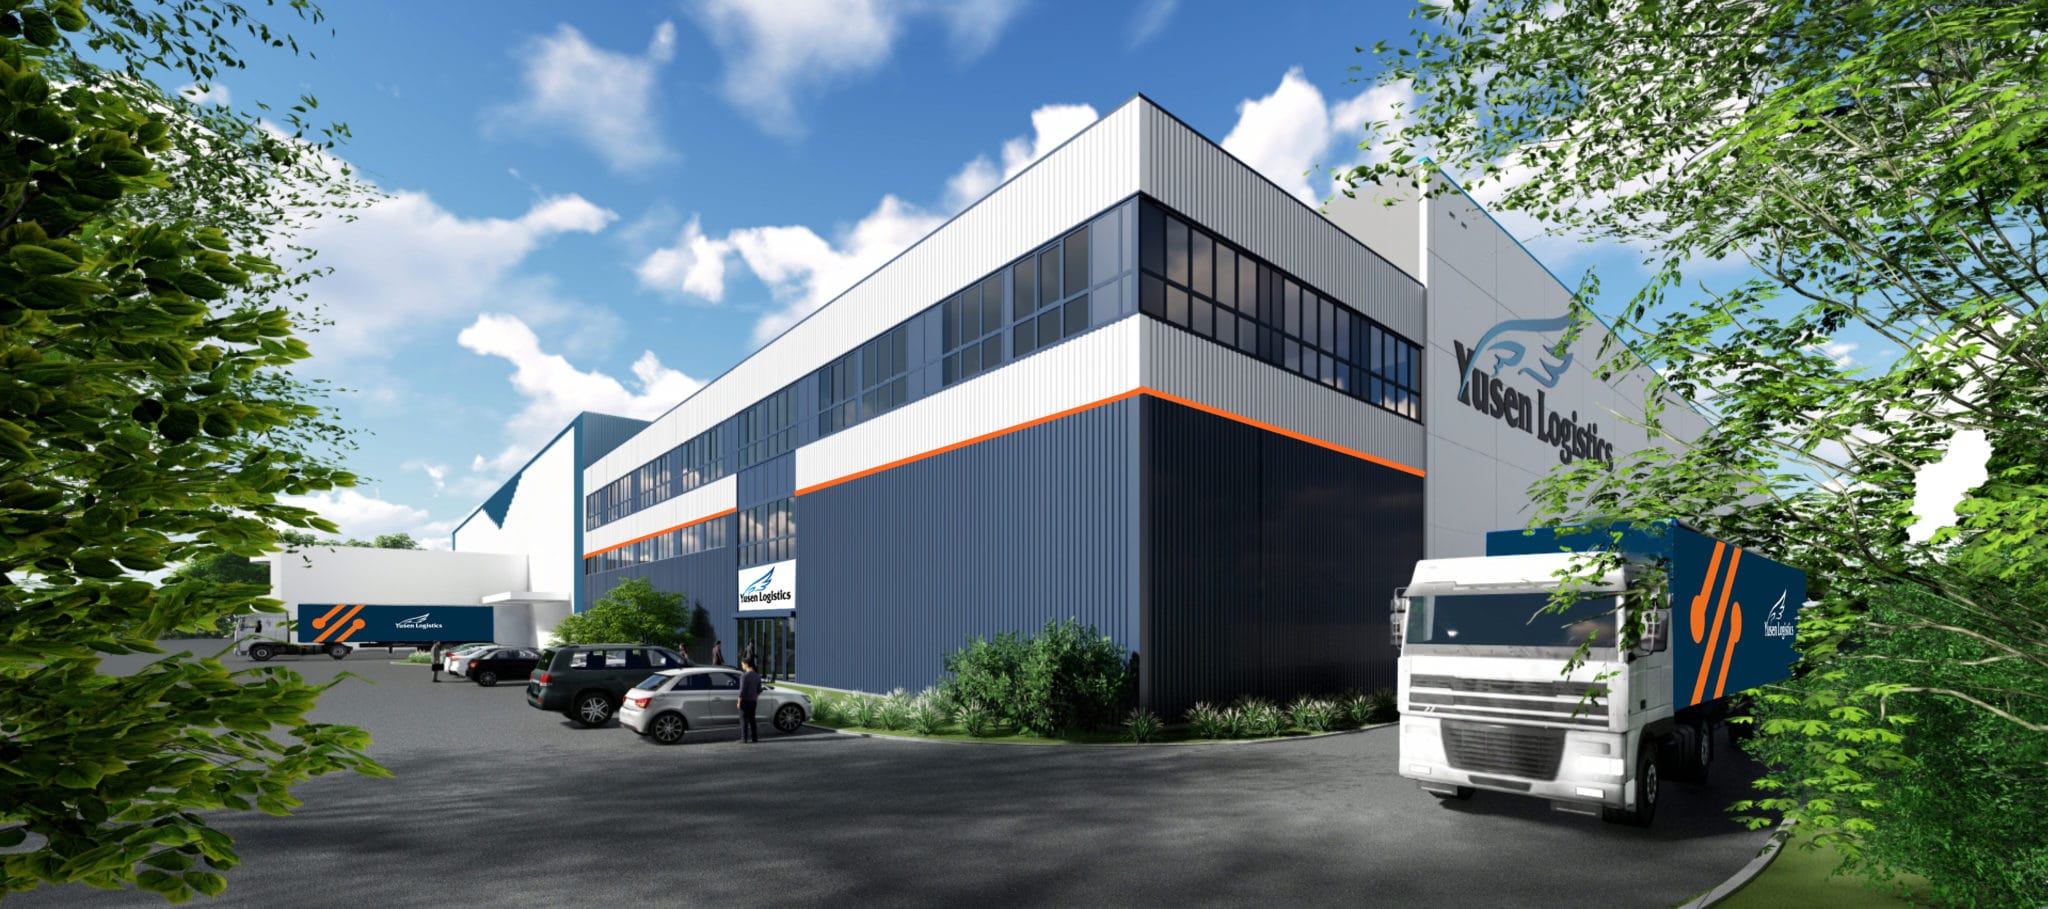 Dematic automatise le nouvel entrepôt de Yusen Logistics en Belgique